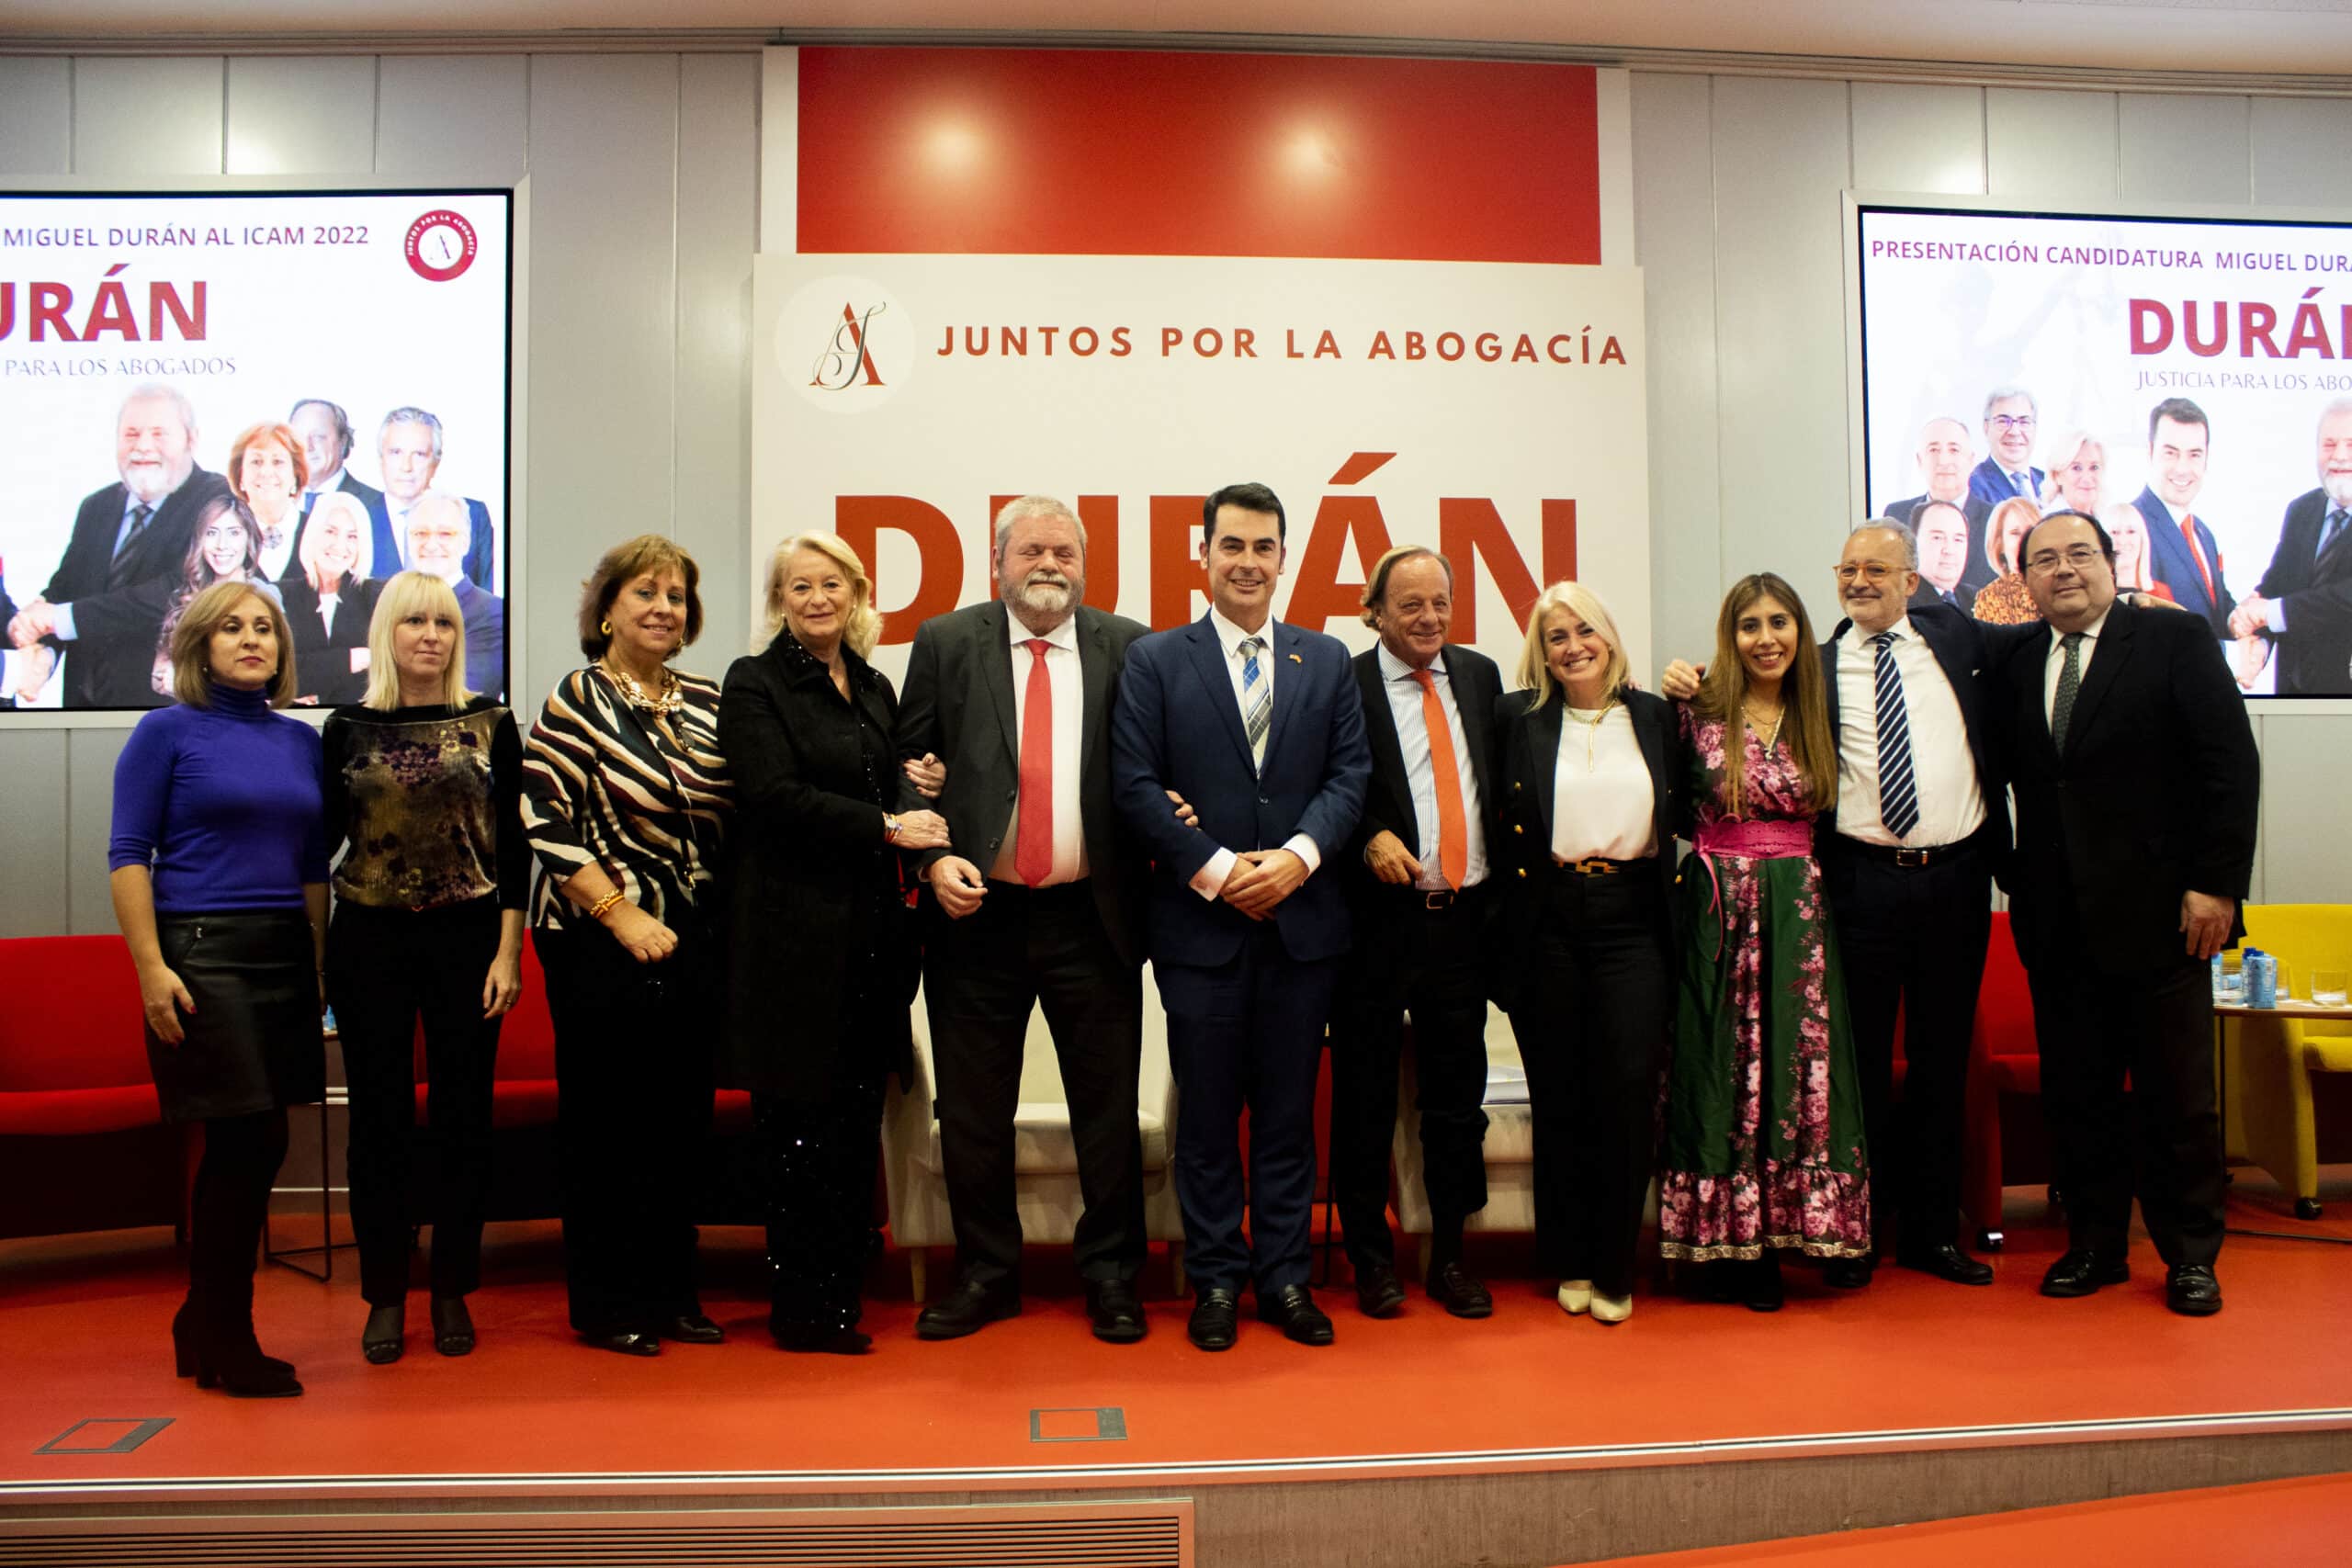 Miguel Durán promete iniciar un diálogo institucional con el CGPJ si gana el decanato del ICAM